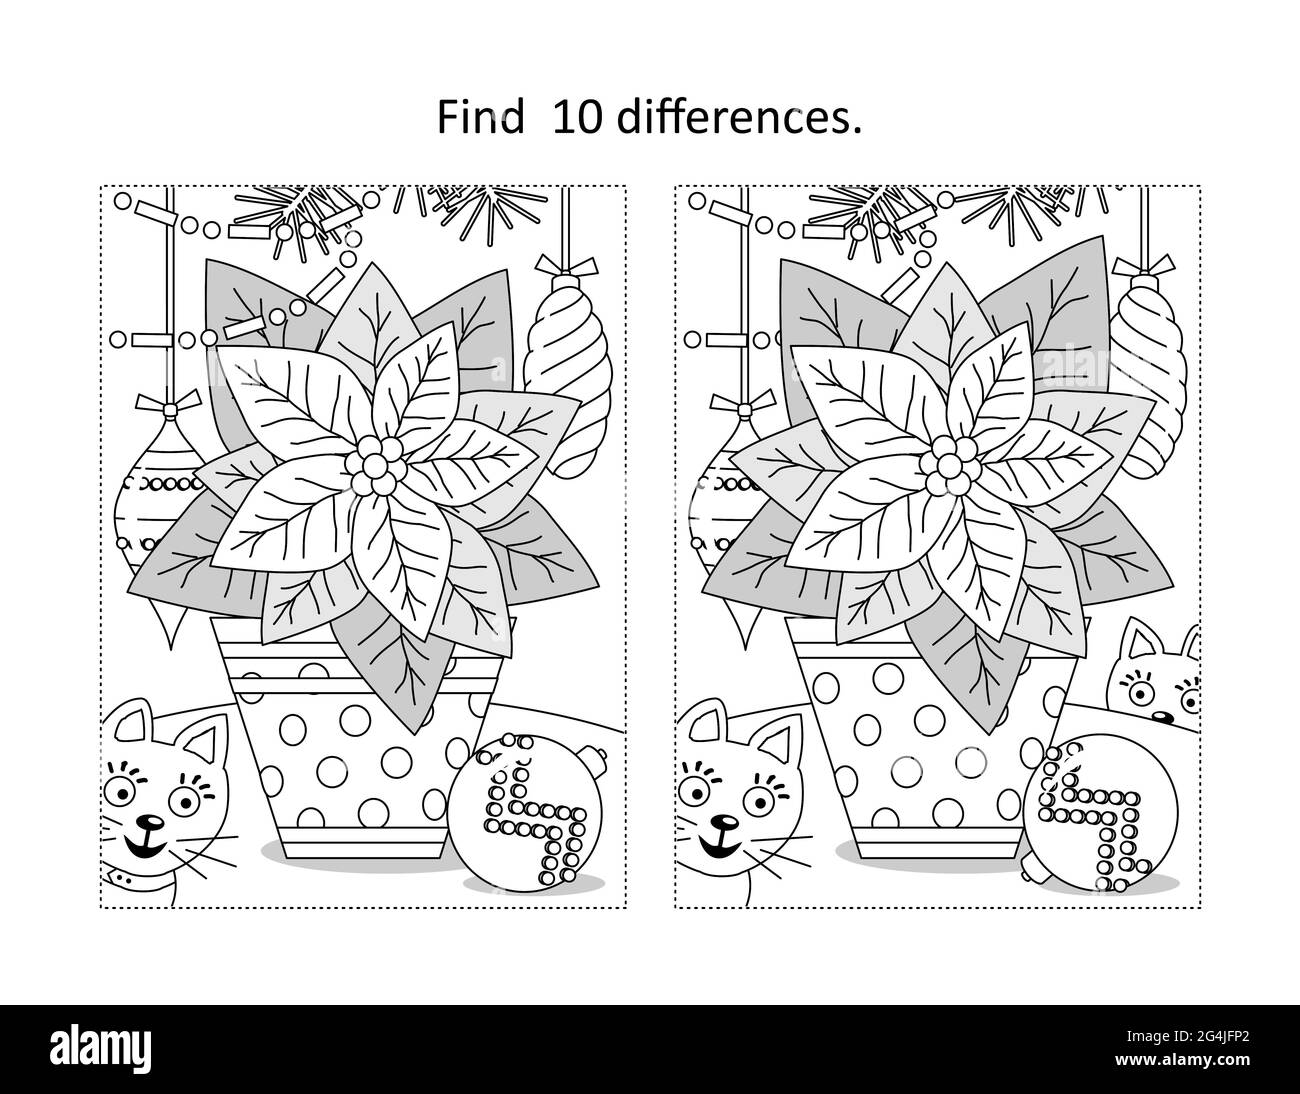 Trouvez 10 différences visuel puzzle et coloriage page avec la fleur de poinsettia dans le pot en pointillés Banque D'Images